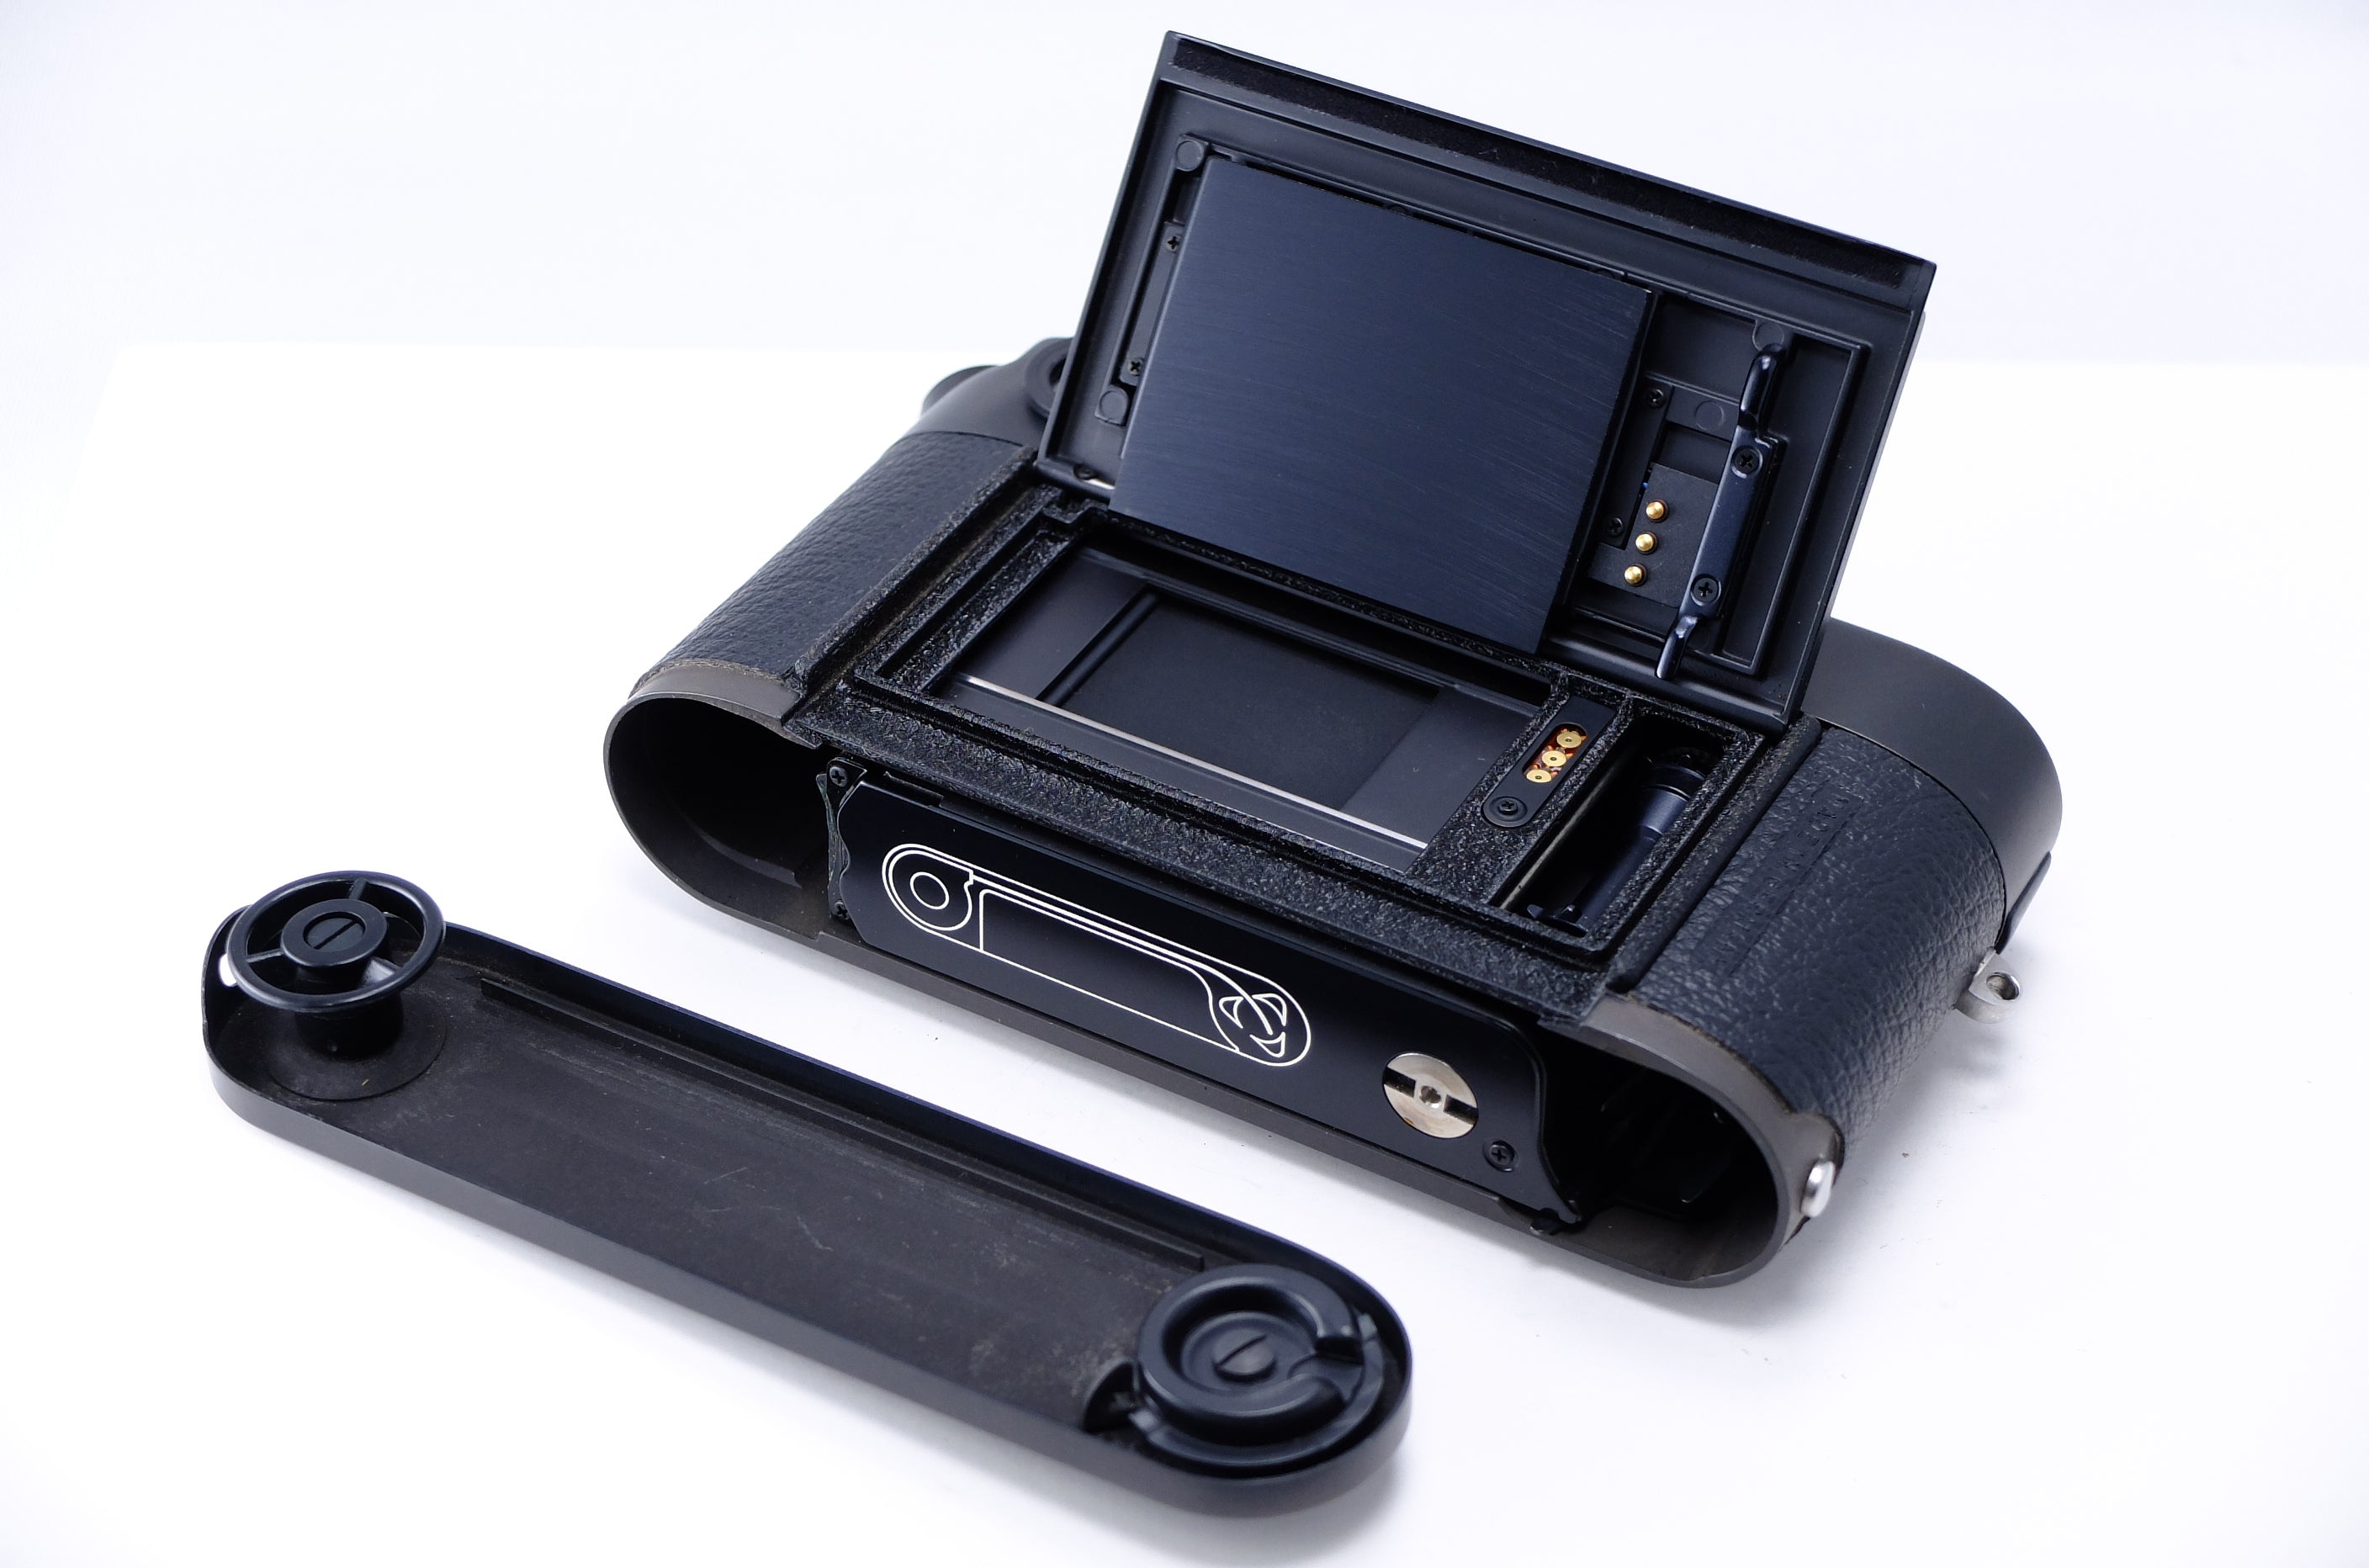 Leica】M6 (ブラック) LEITZ WETZLAR GMBH刻印 [1569001994759] – 東京 